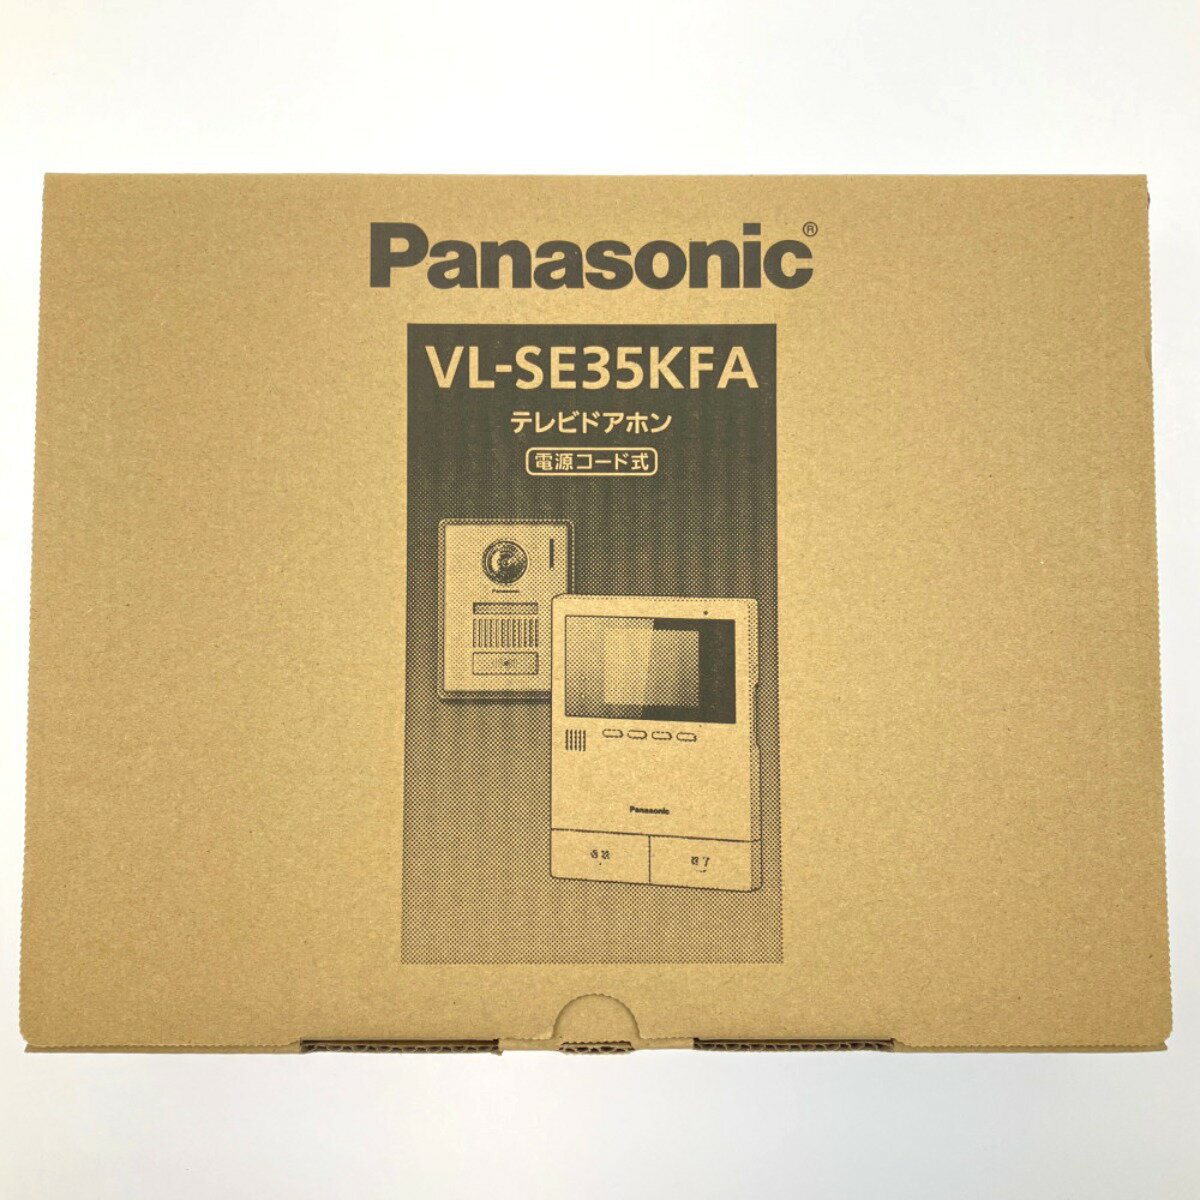 ▽▽【中古】Panasonic パナソニック テレビドアホン 電源コード式 VL-SE35KFA 開封未使用品 Sランク